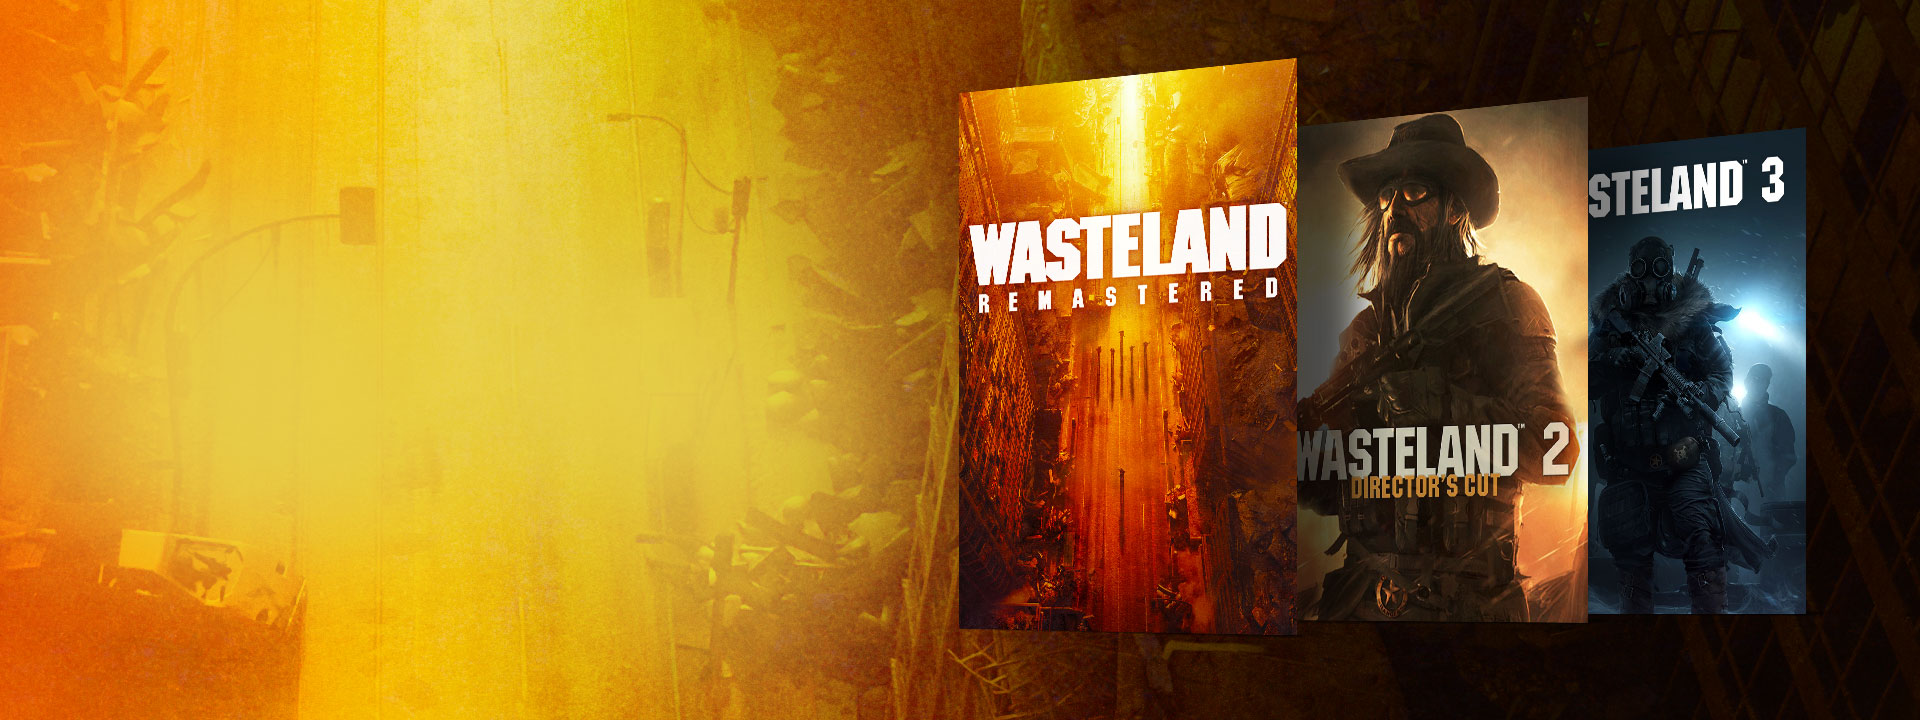 Coverbilleder af Wasteland Remastered, Wasteland 2 Director’s Cut og Wasteland 3. En baggrund af en forladt gade med gule og orange nuancer